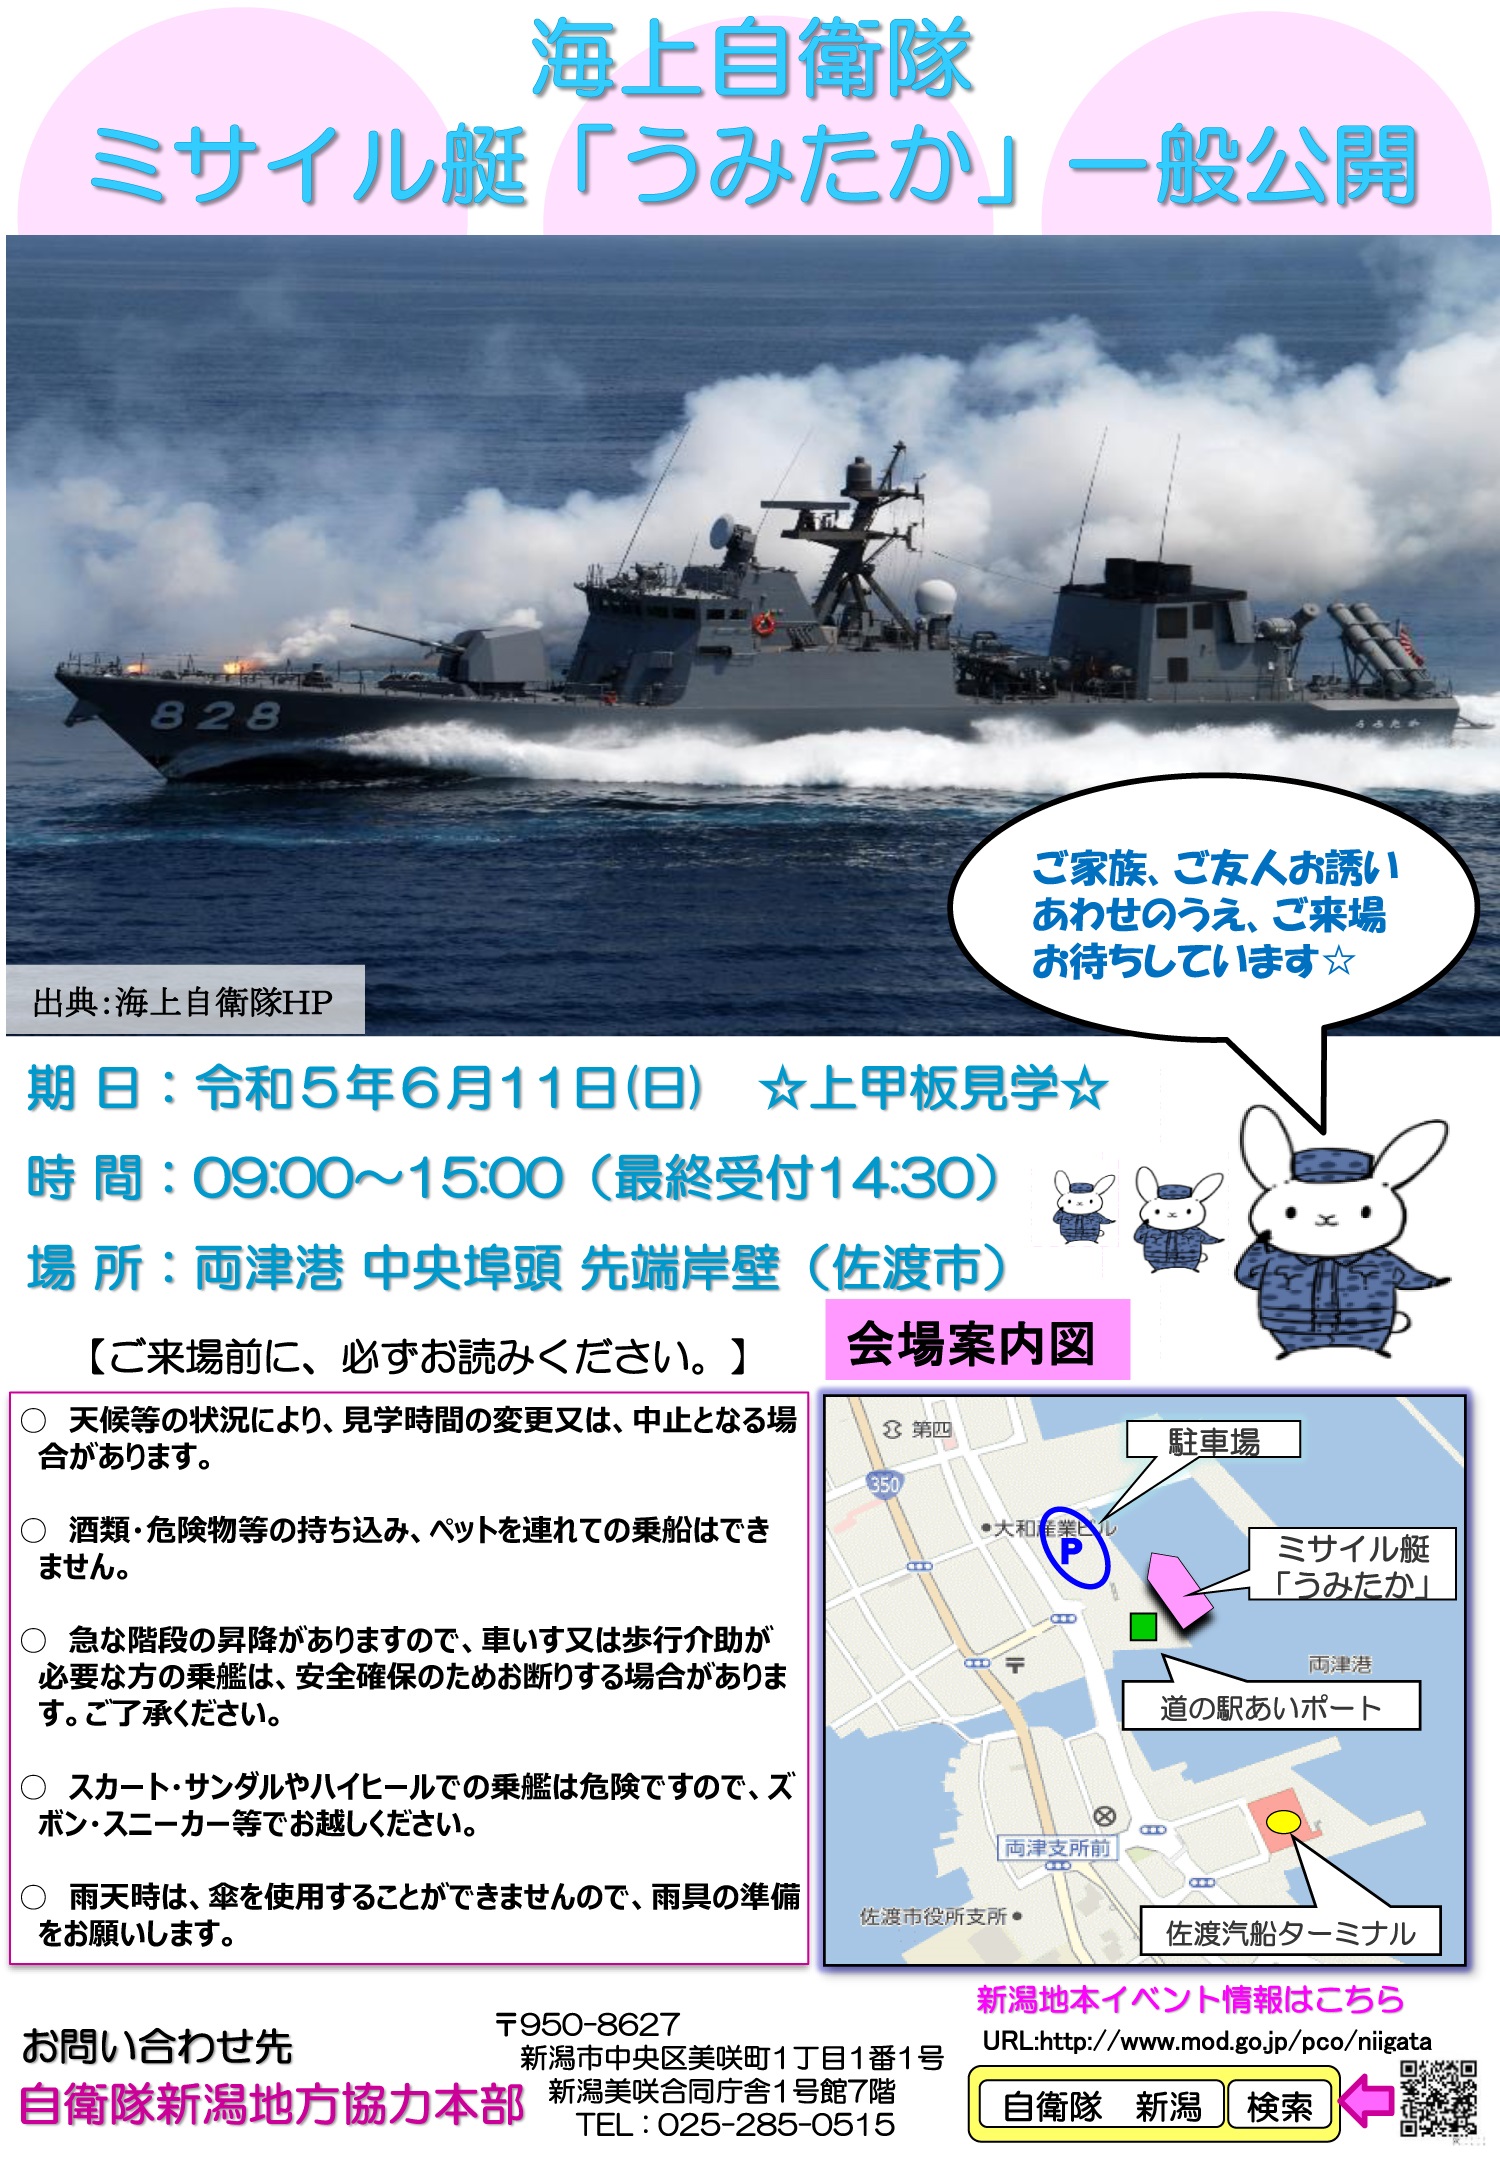 海上自衛隊 ミサイル艇「うみたか」一般公開 in 両津港：ポスター